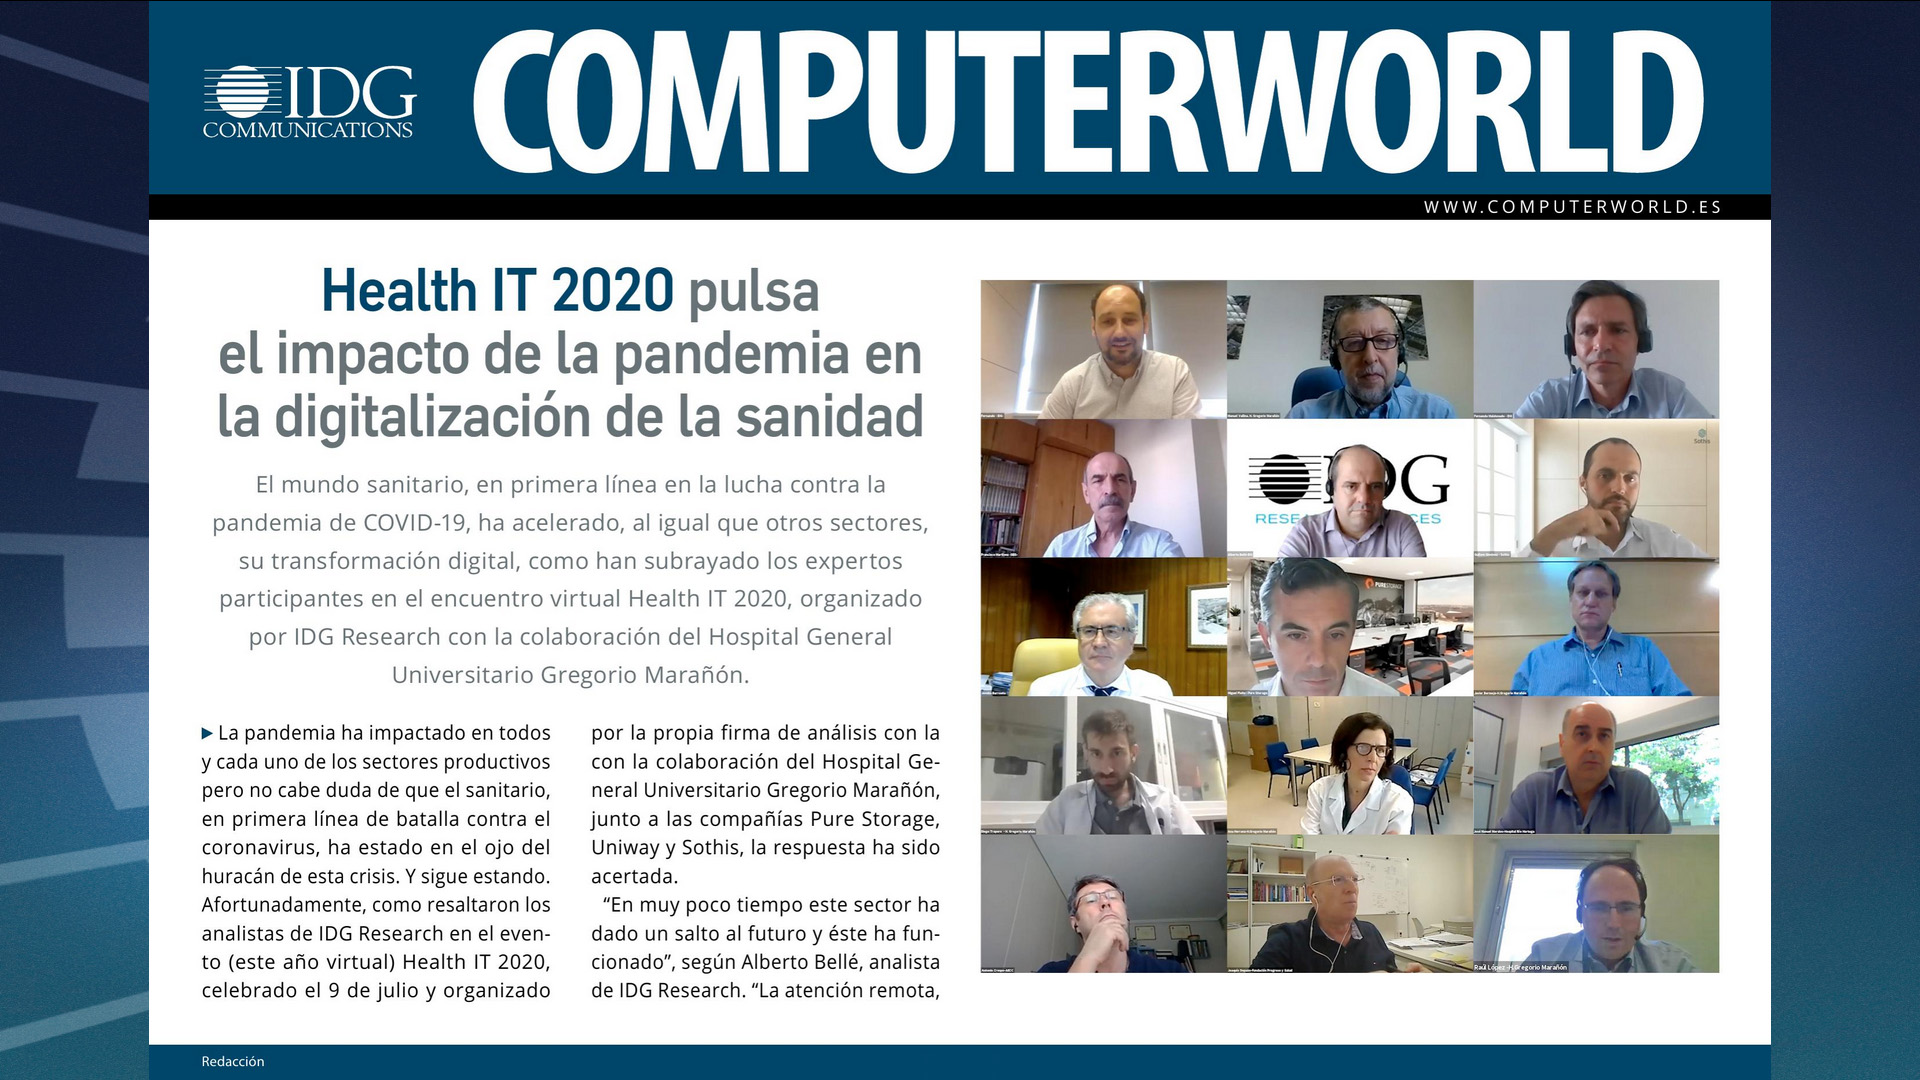 ComputerWorld Insider HealthIT